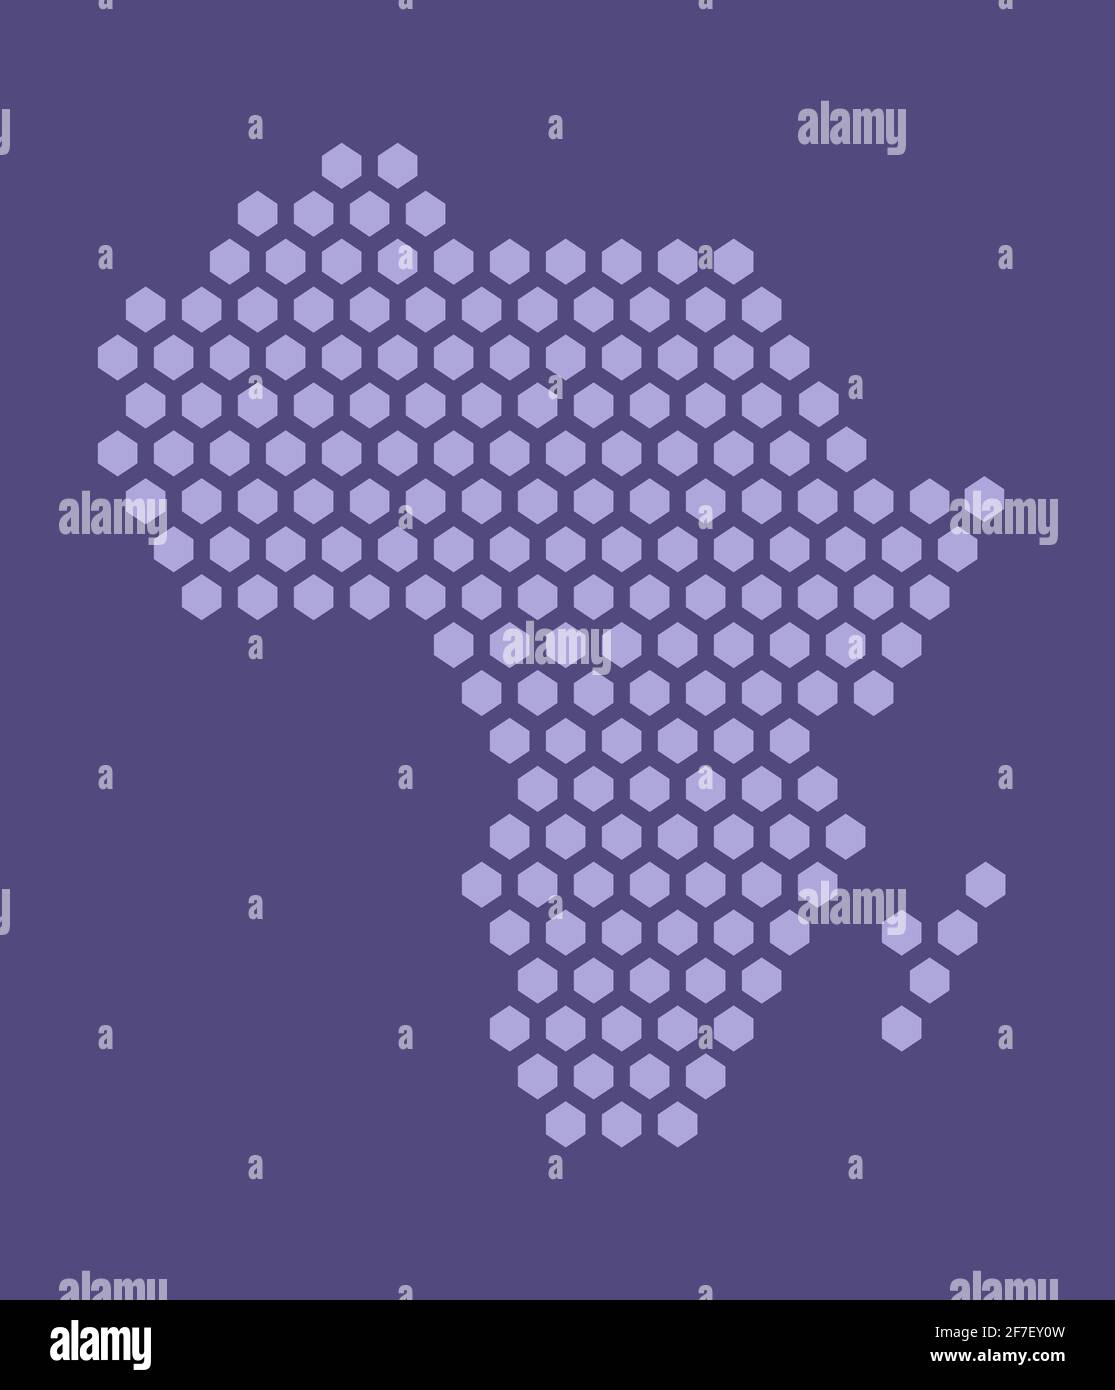 Violette sechseckige Pixelkarte von Afrika. Vektor-Illustration Afrikanischer Kontinent Sechskantkarte gepunktetes Mosaik. Verwaltungsgrenze, Landzusammensetzung. Stock Vektor